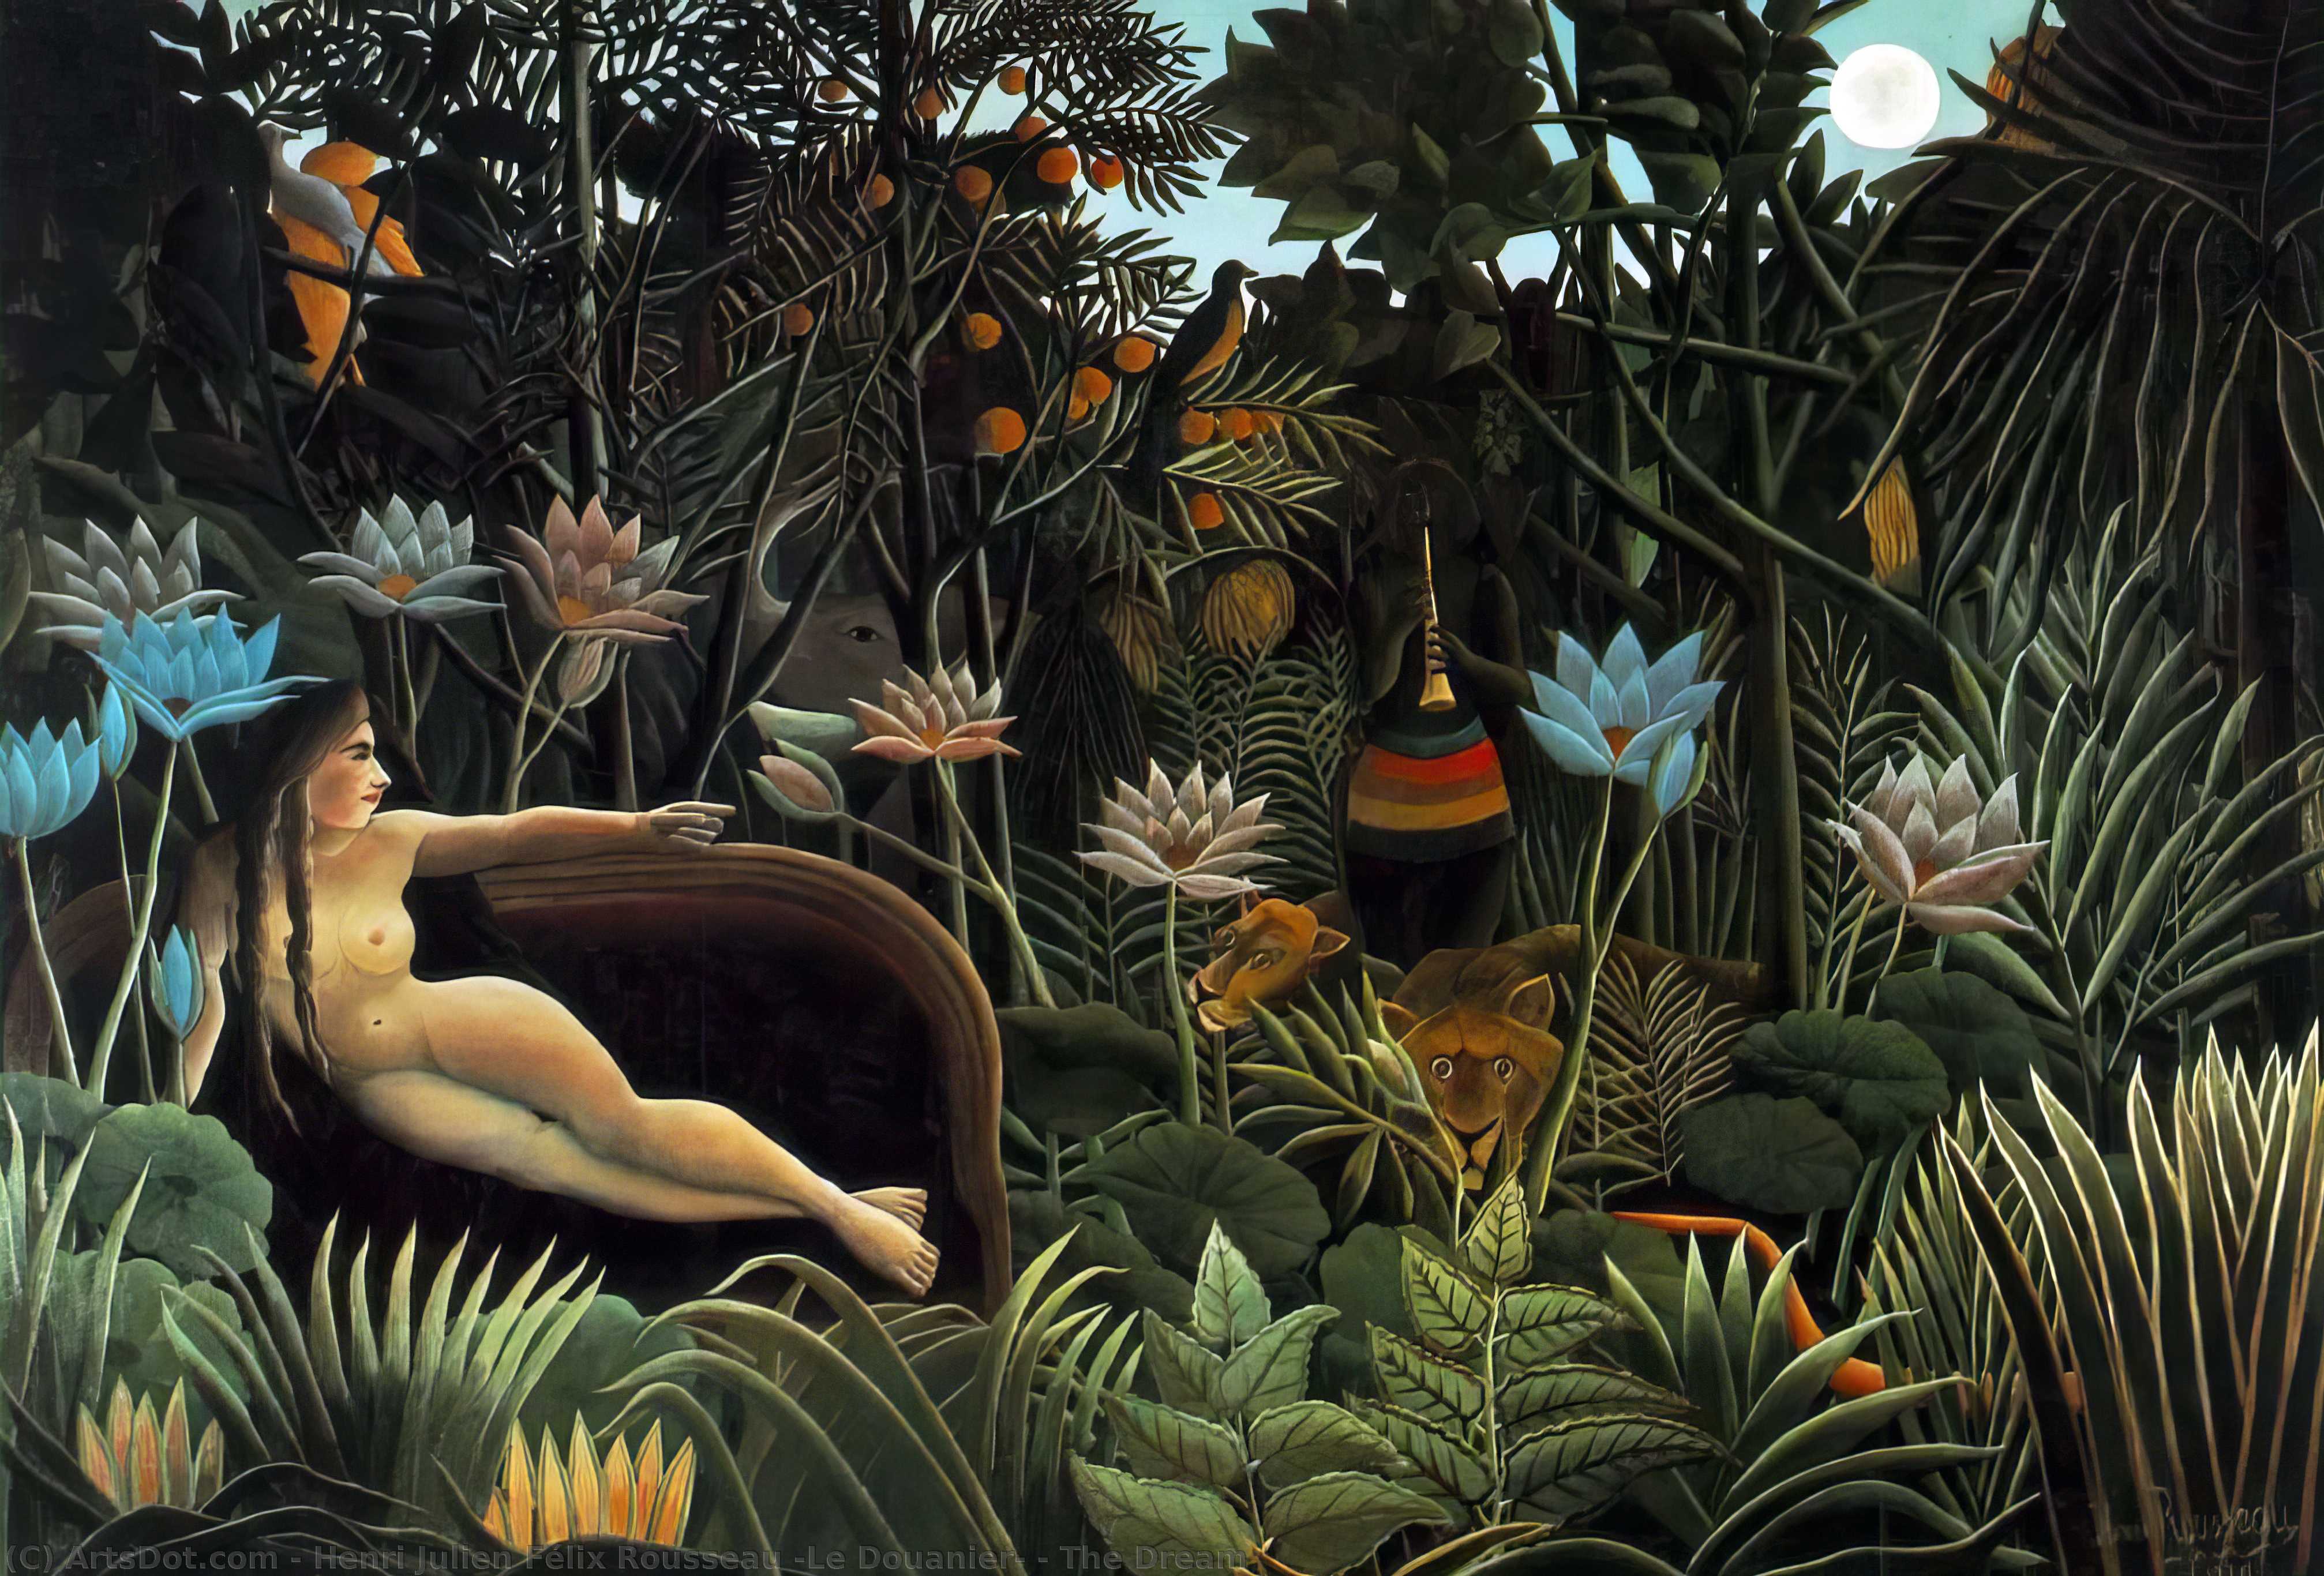 WikiOO.org - Encyclopedia of Fine Arts - Schilderen, Artwork Henri Julien Félix Rousseau (Le Douanier) - The Dream